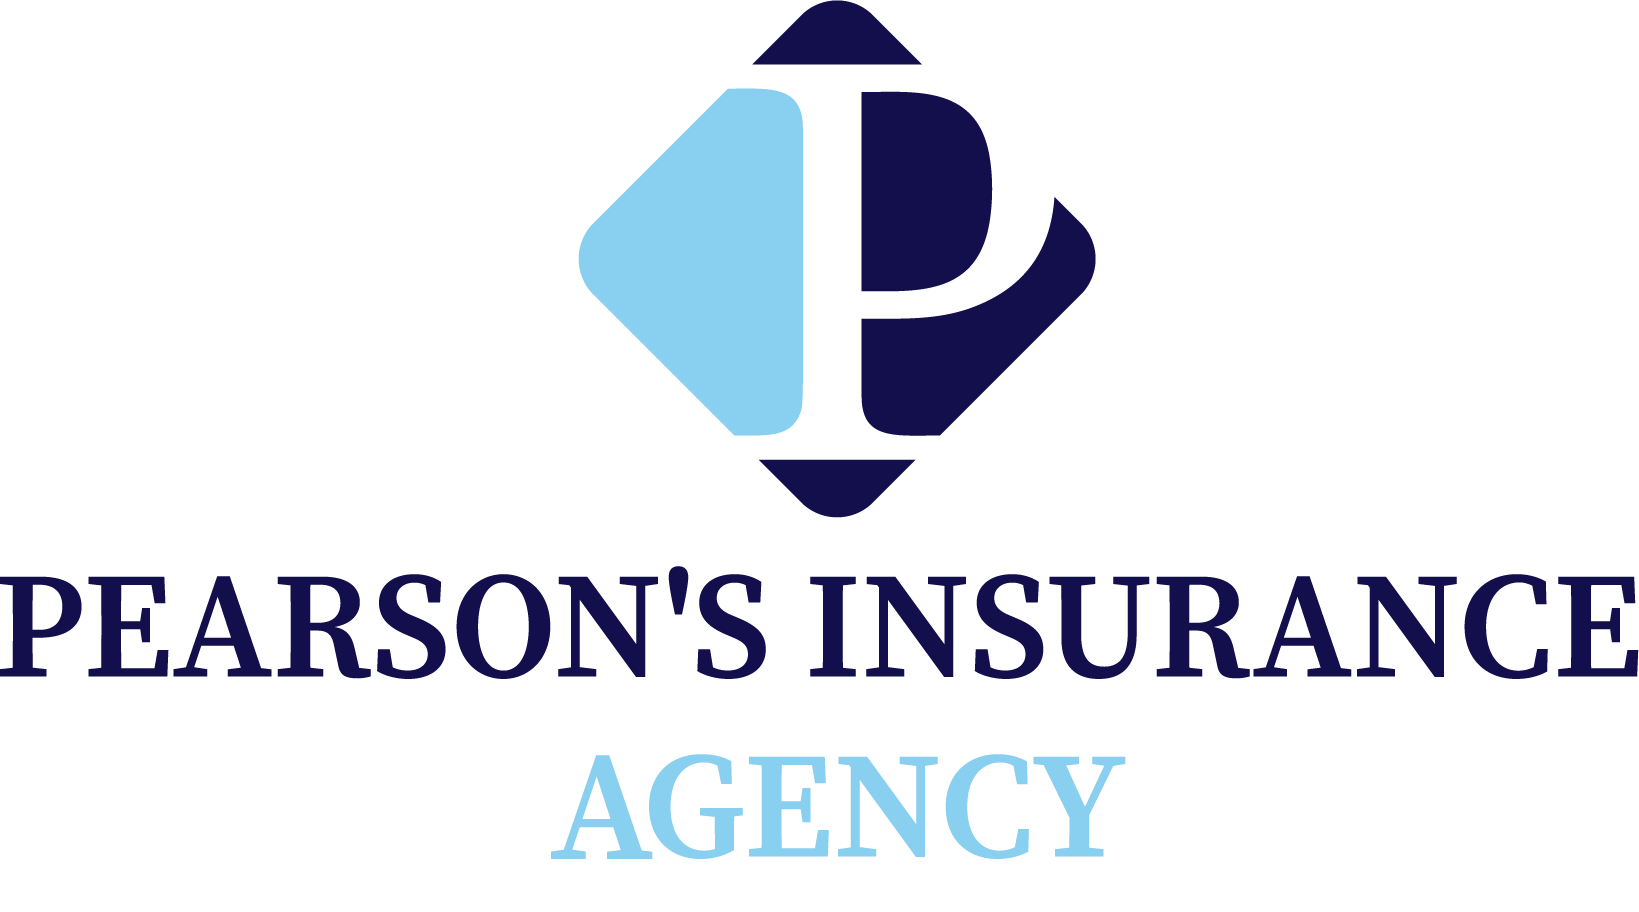 Pearson’s Insurance Agency